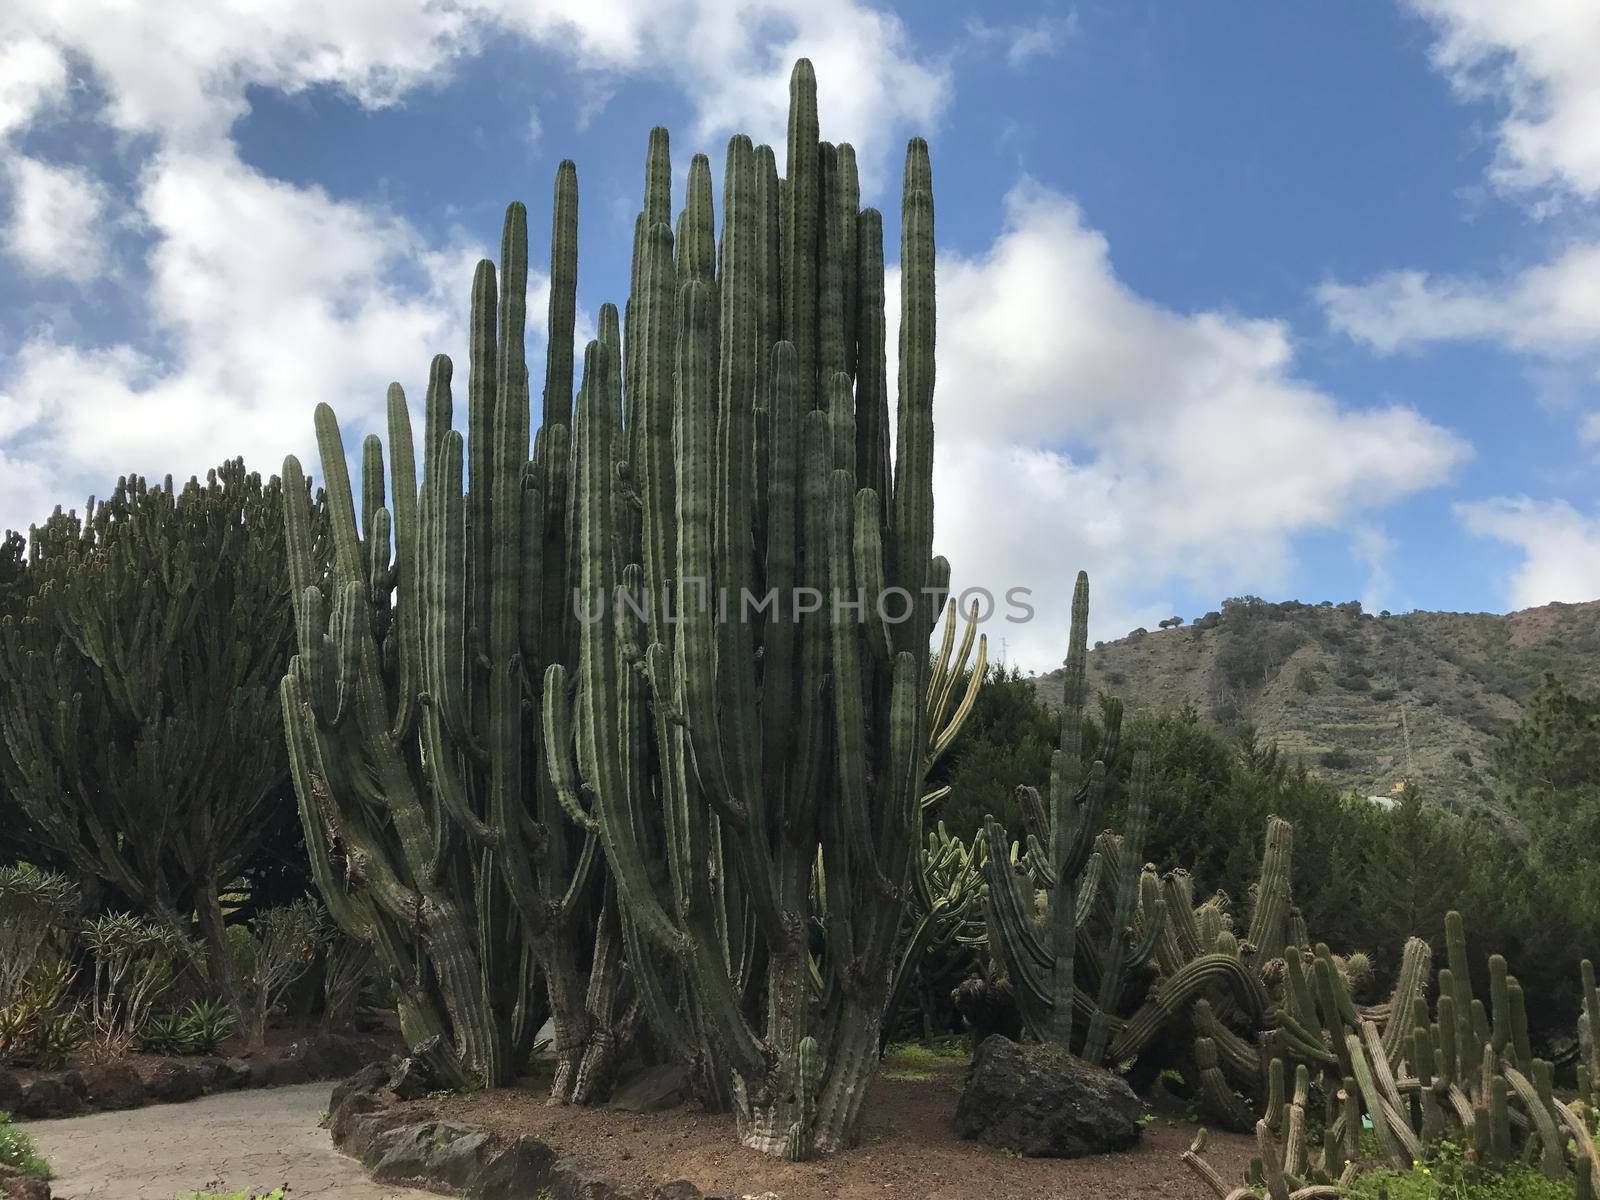 Big cactus at Jardin Canario botanic gardens in Las Palmas Gran Canaria
